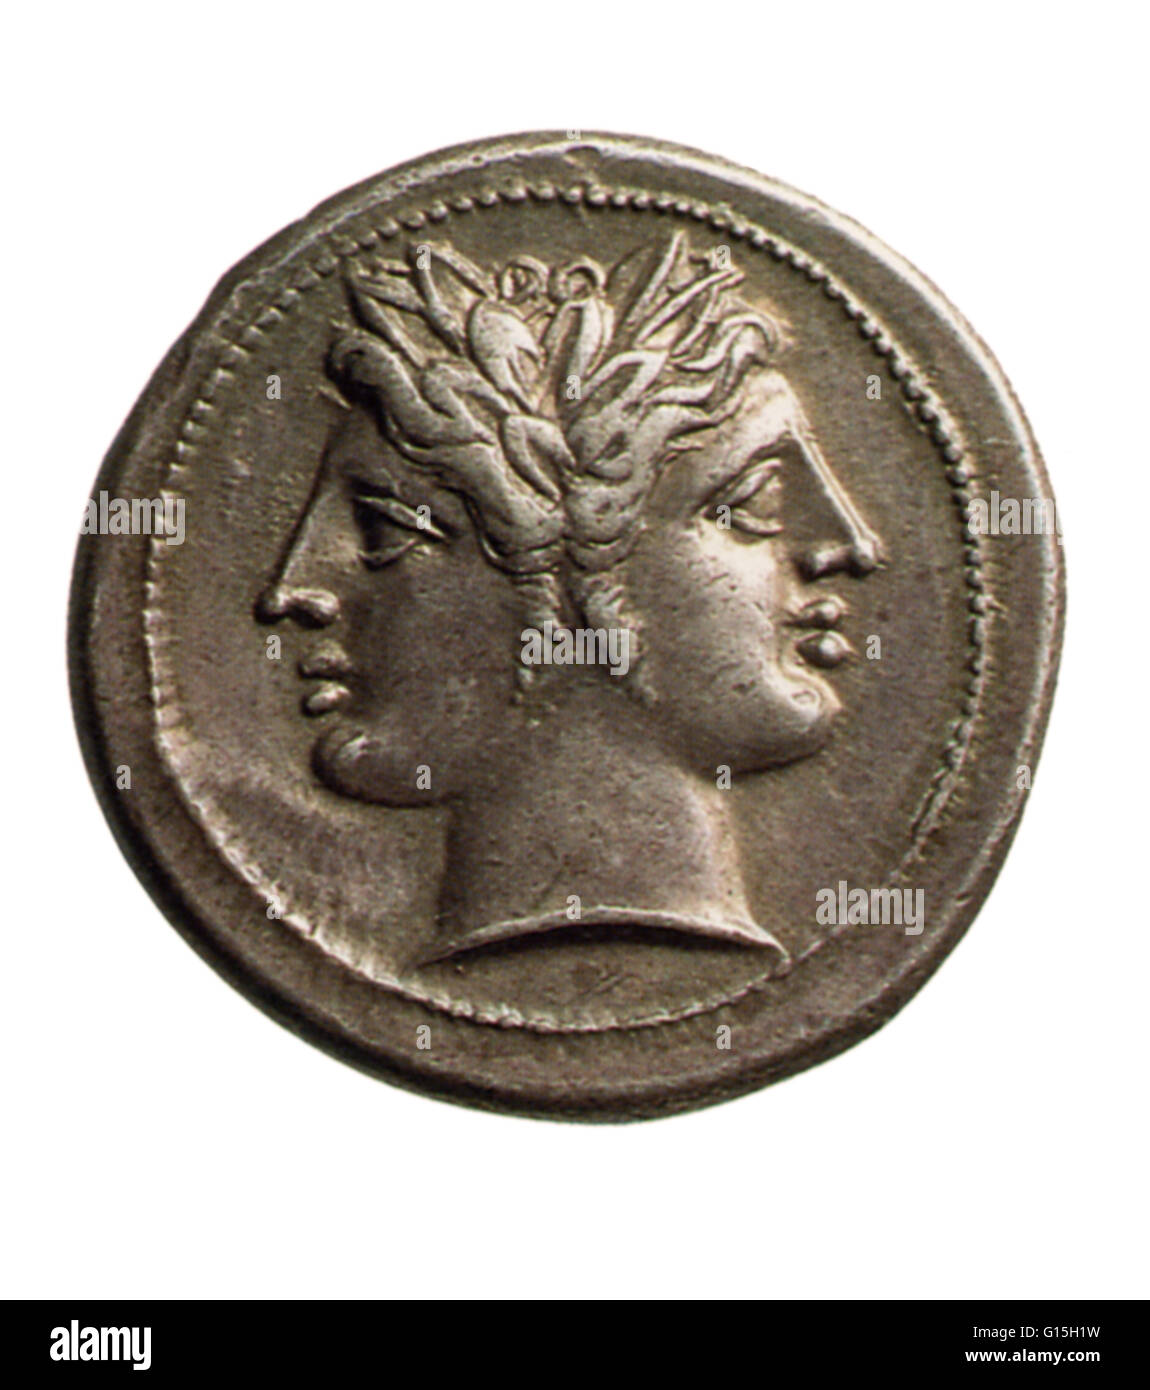 Moneta romana dotate di Giano, il dio degli inizi e transizioni. Egli è rappresentato come avente due teste, simbolicamente esaminando sia il futuro e il passato. Il mese di gennaio è chiamato dopo di lui. Foto Stock